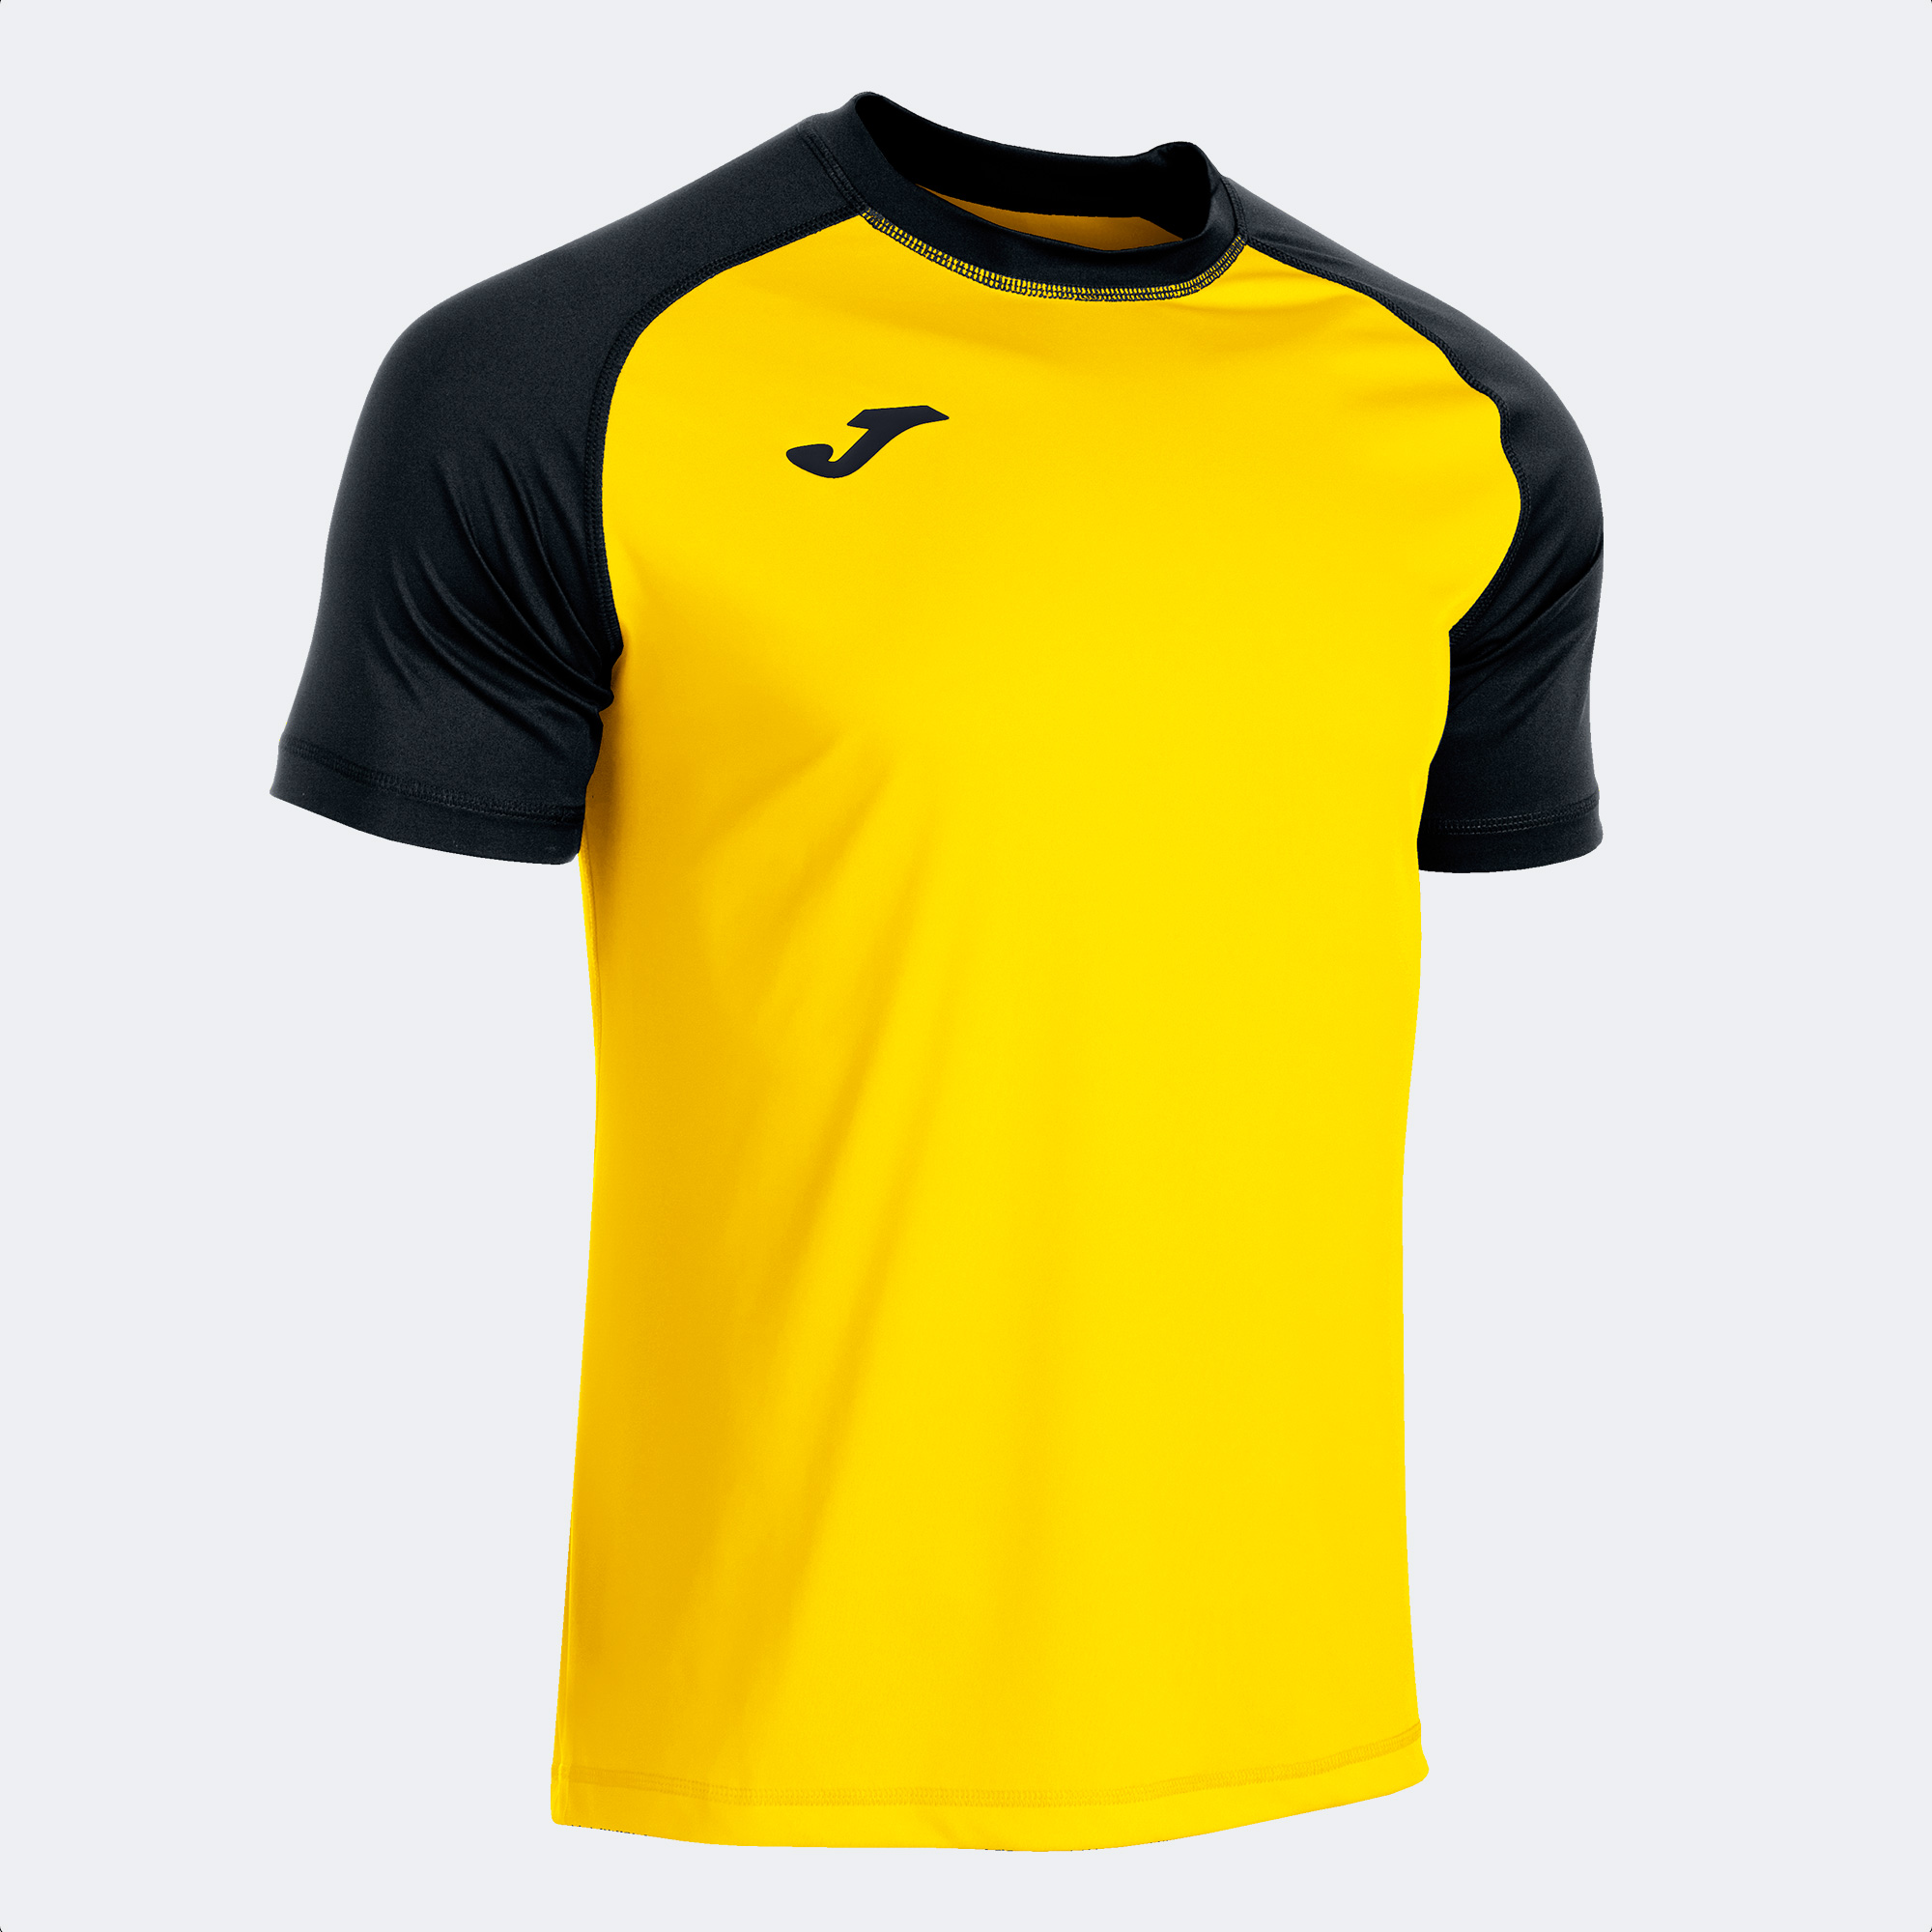 Camiseta Manga Corta Joma Teamwork Amarillo Negro - amarillo-negro - 